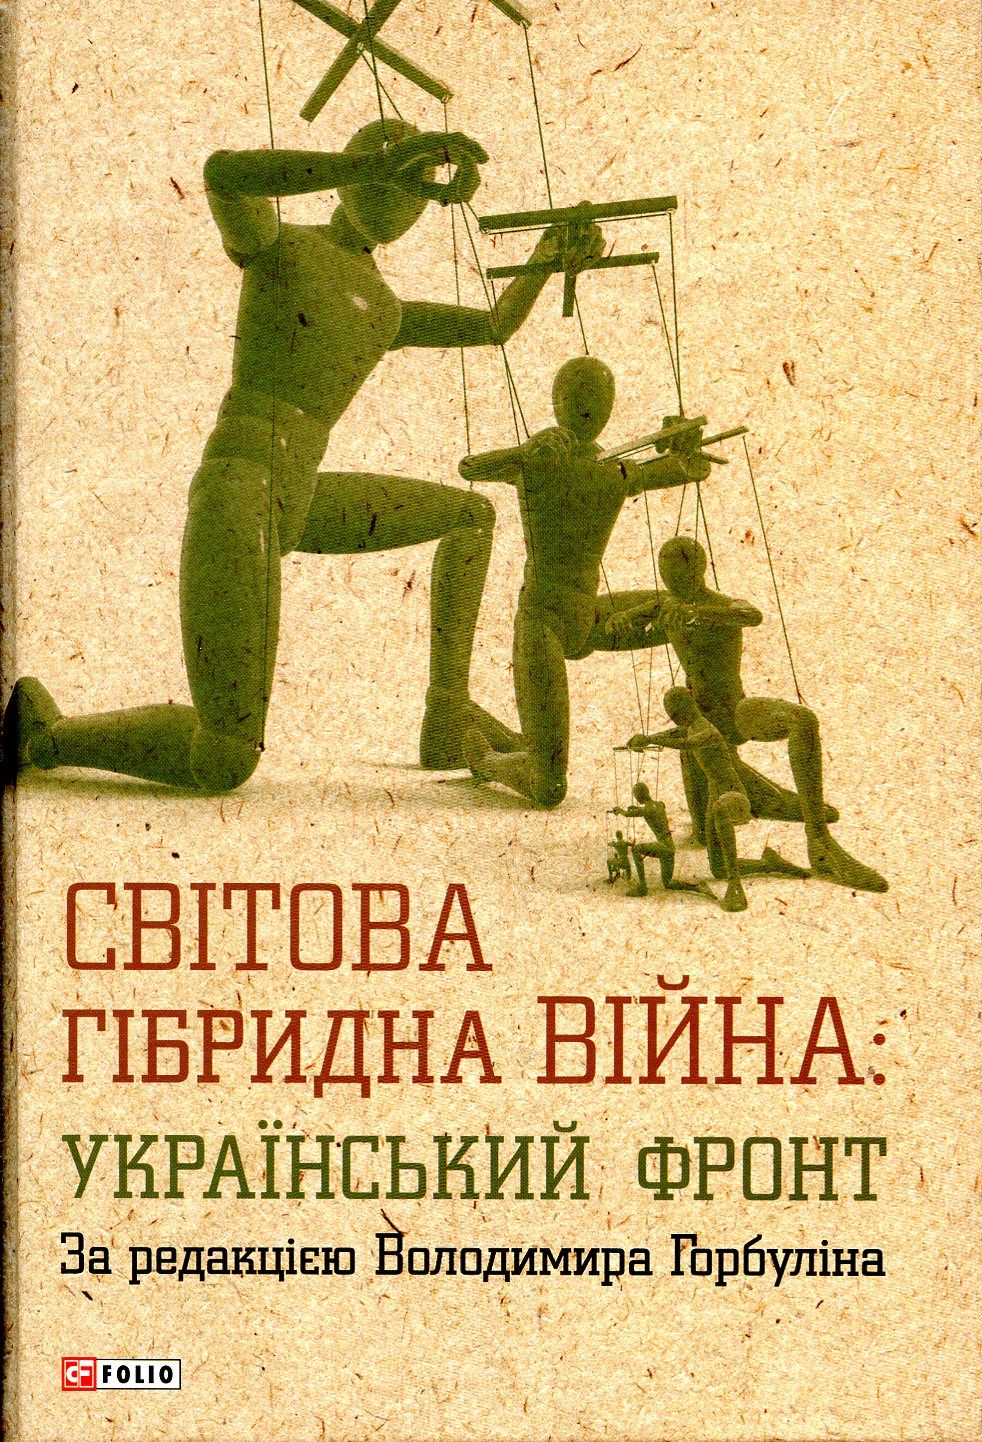 Неписьменні президенти: рецензія на книжку «Світова гібридна війна: український фронт»